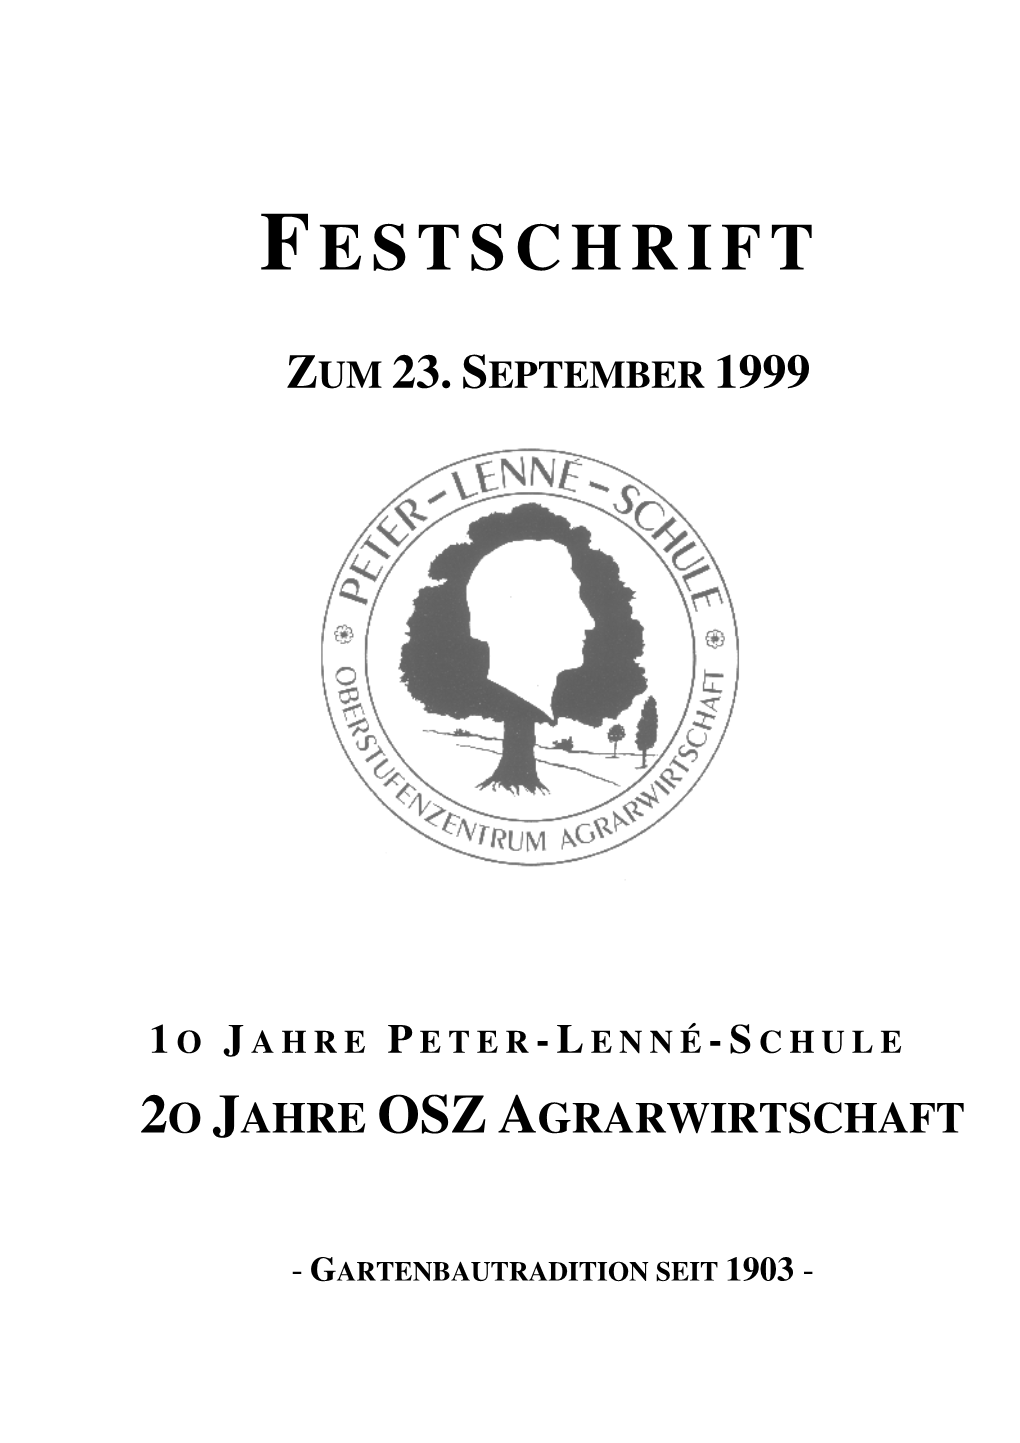 20 Jahre OSZ Agrarwirtschaft, 10 Jahre Peter